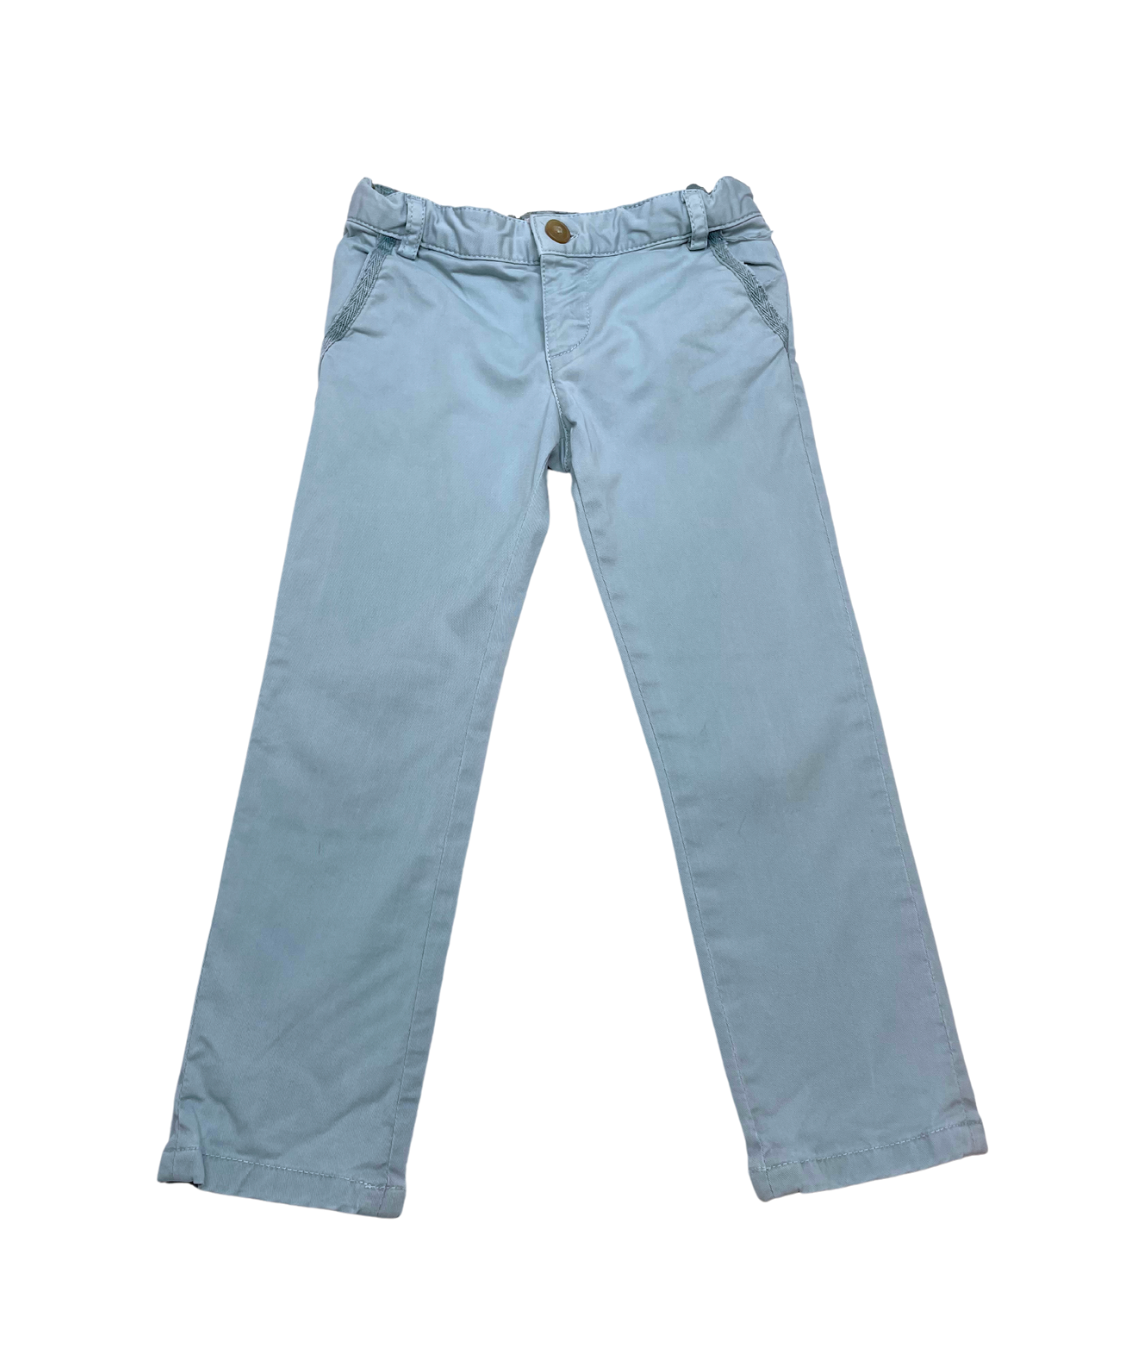 BONPOINT - Pantalon bleu clair élastiqué - 4 ans